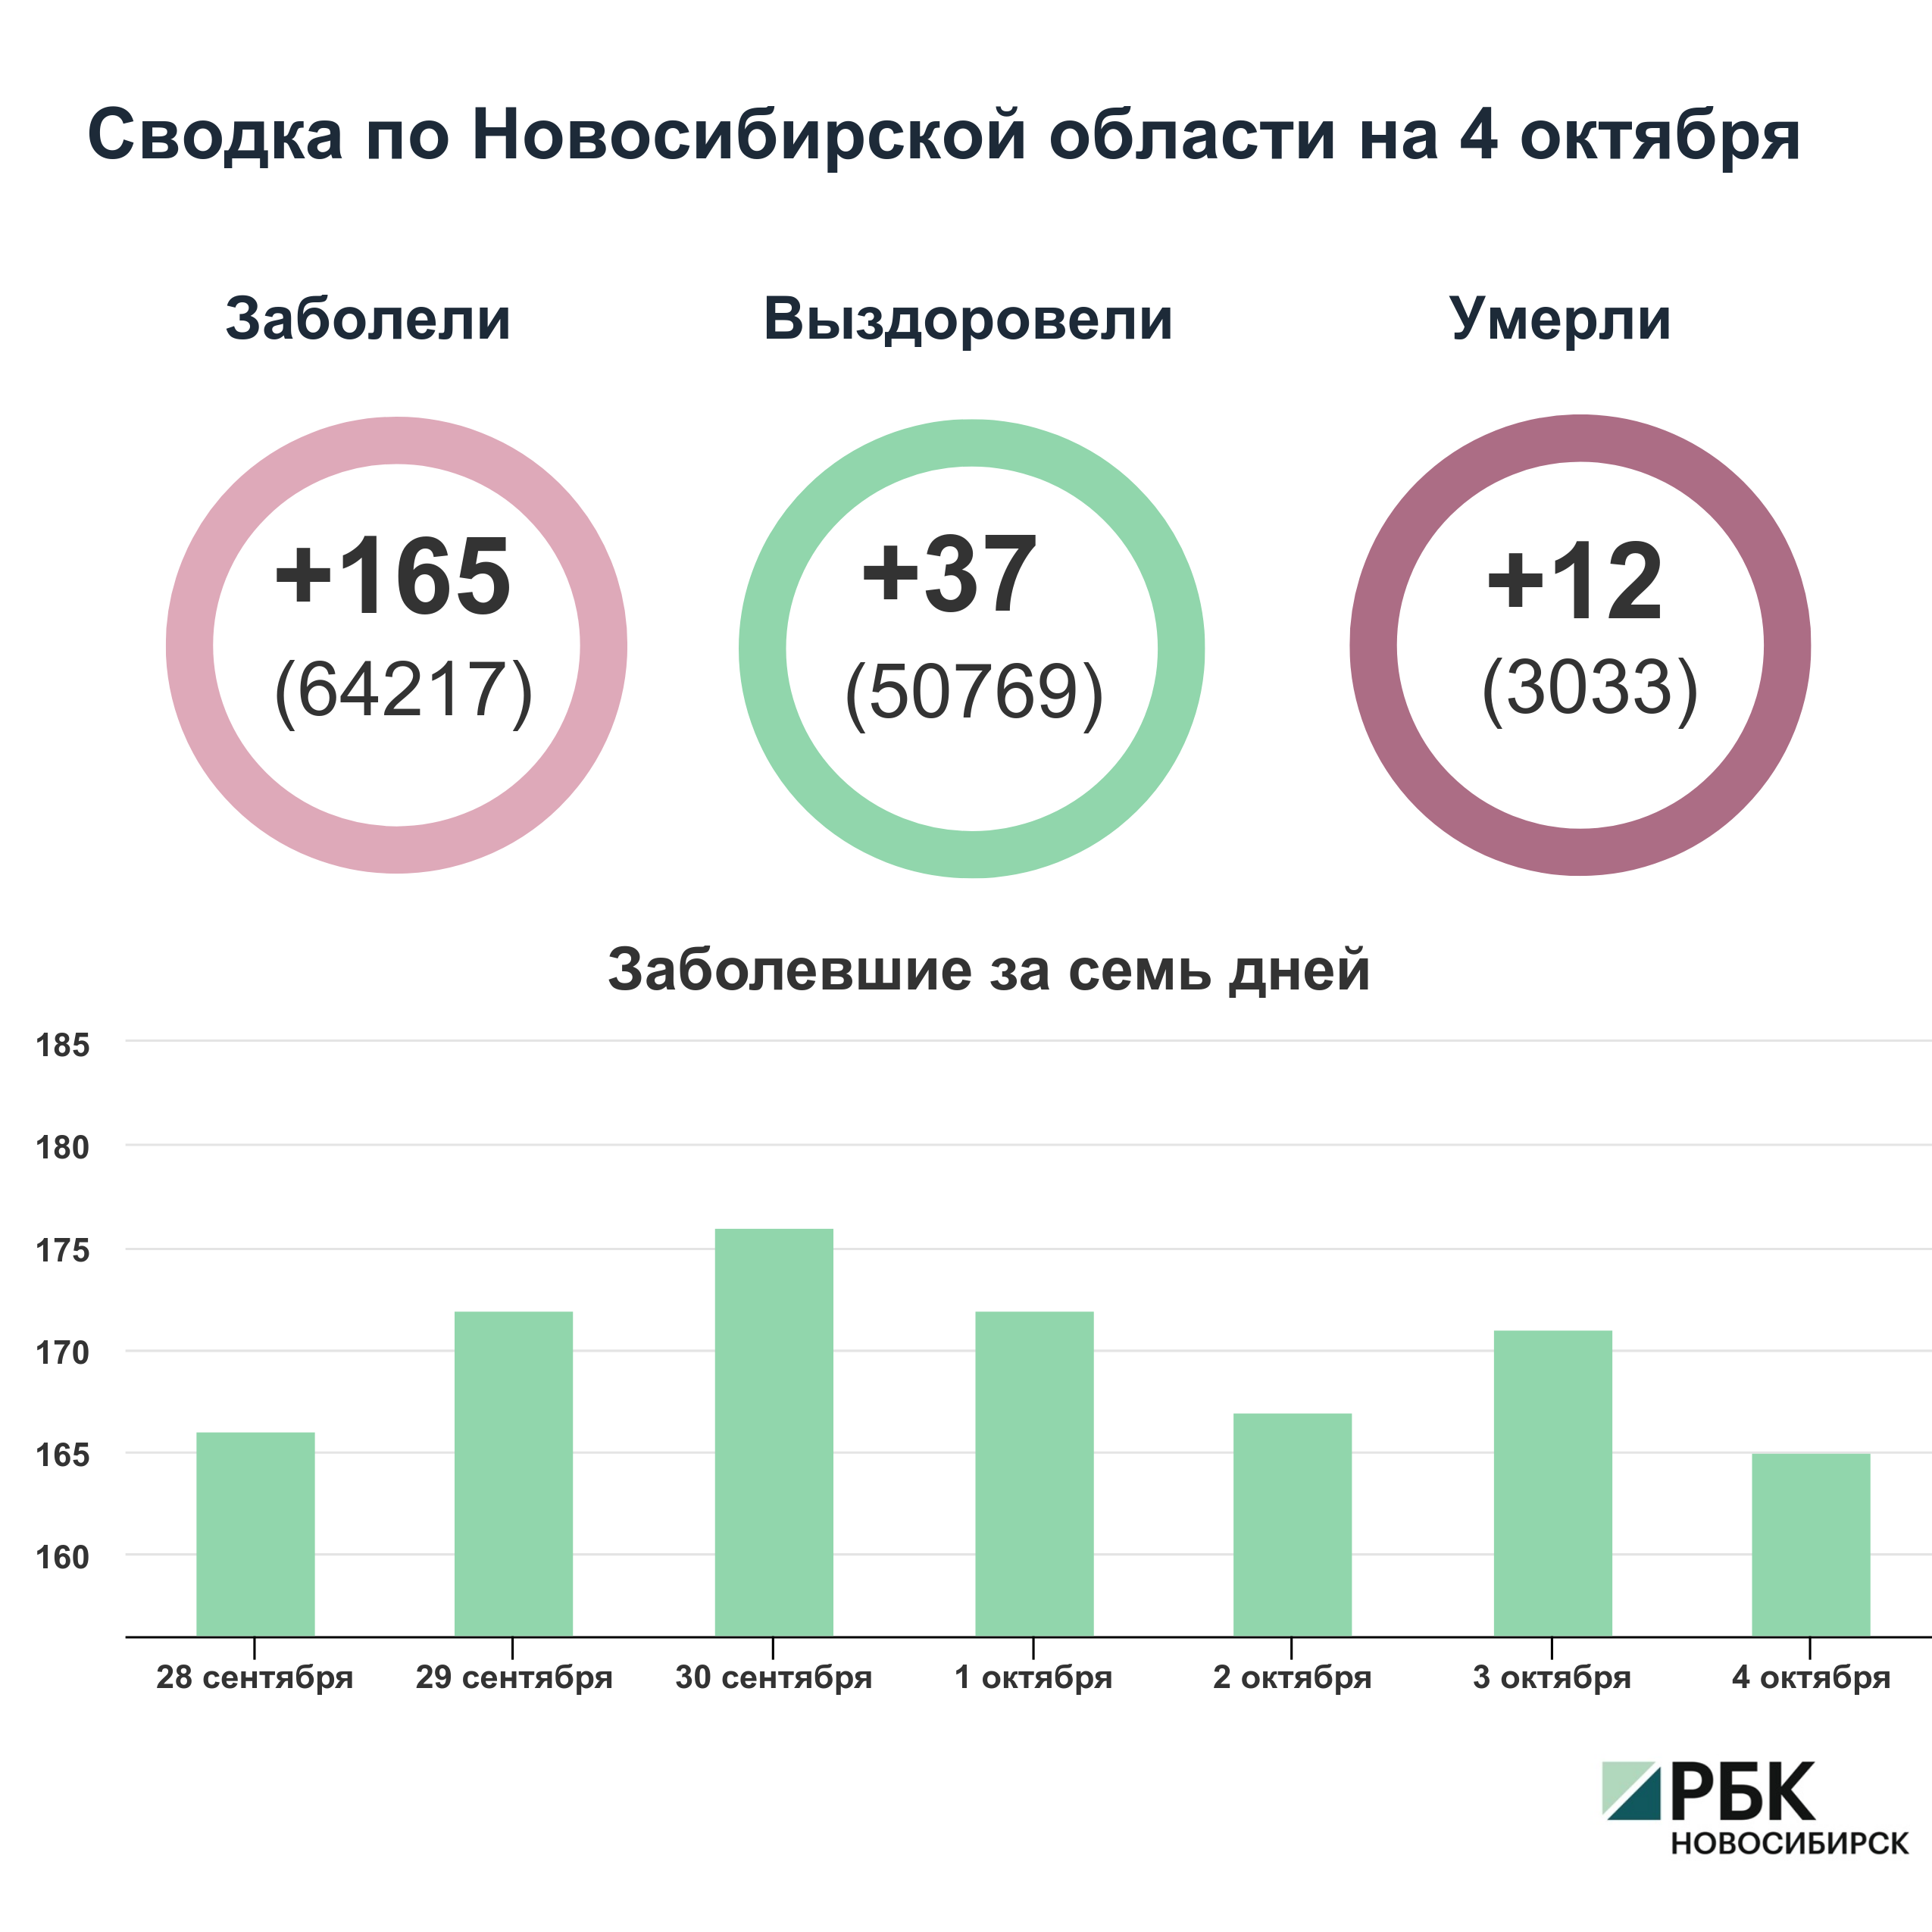 Коронавирус в Новосибирске: сводка на 4 октября